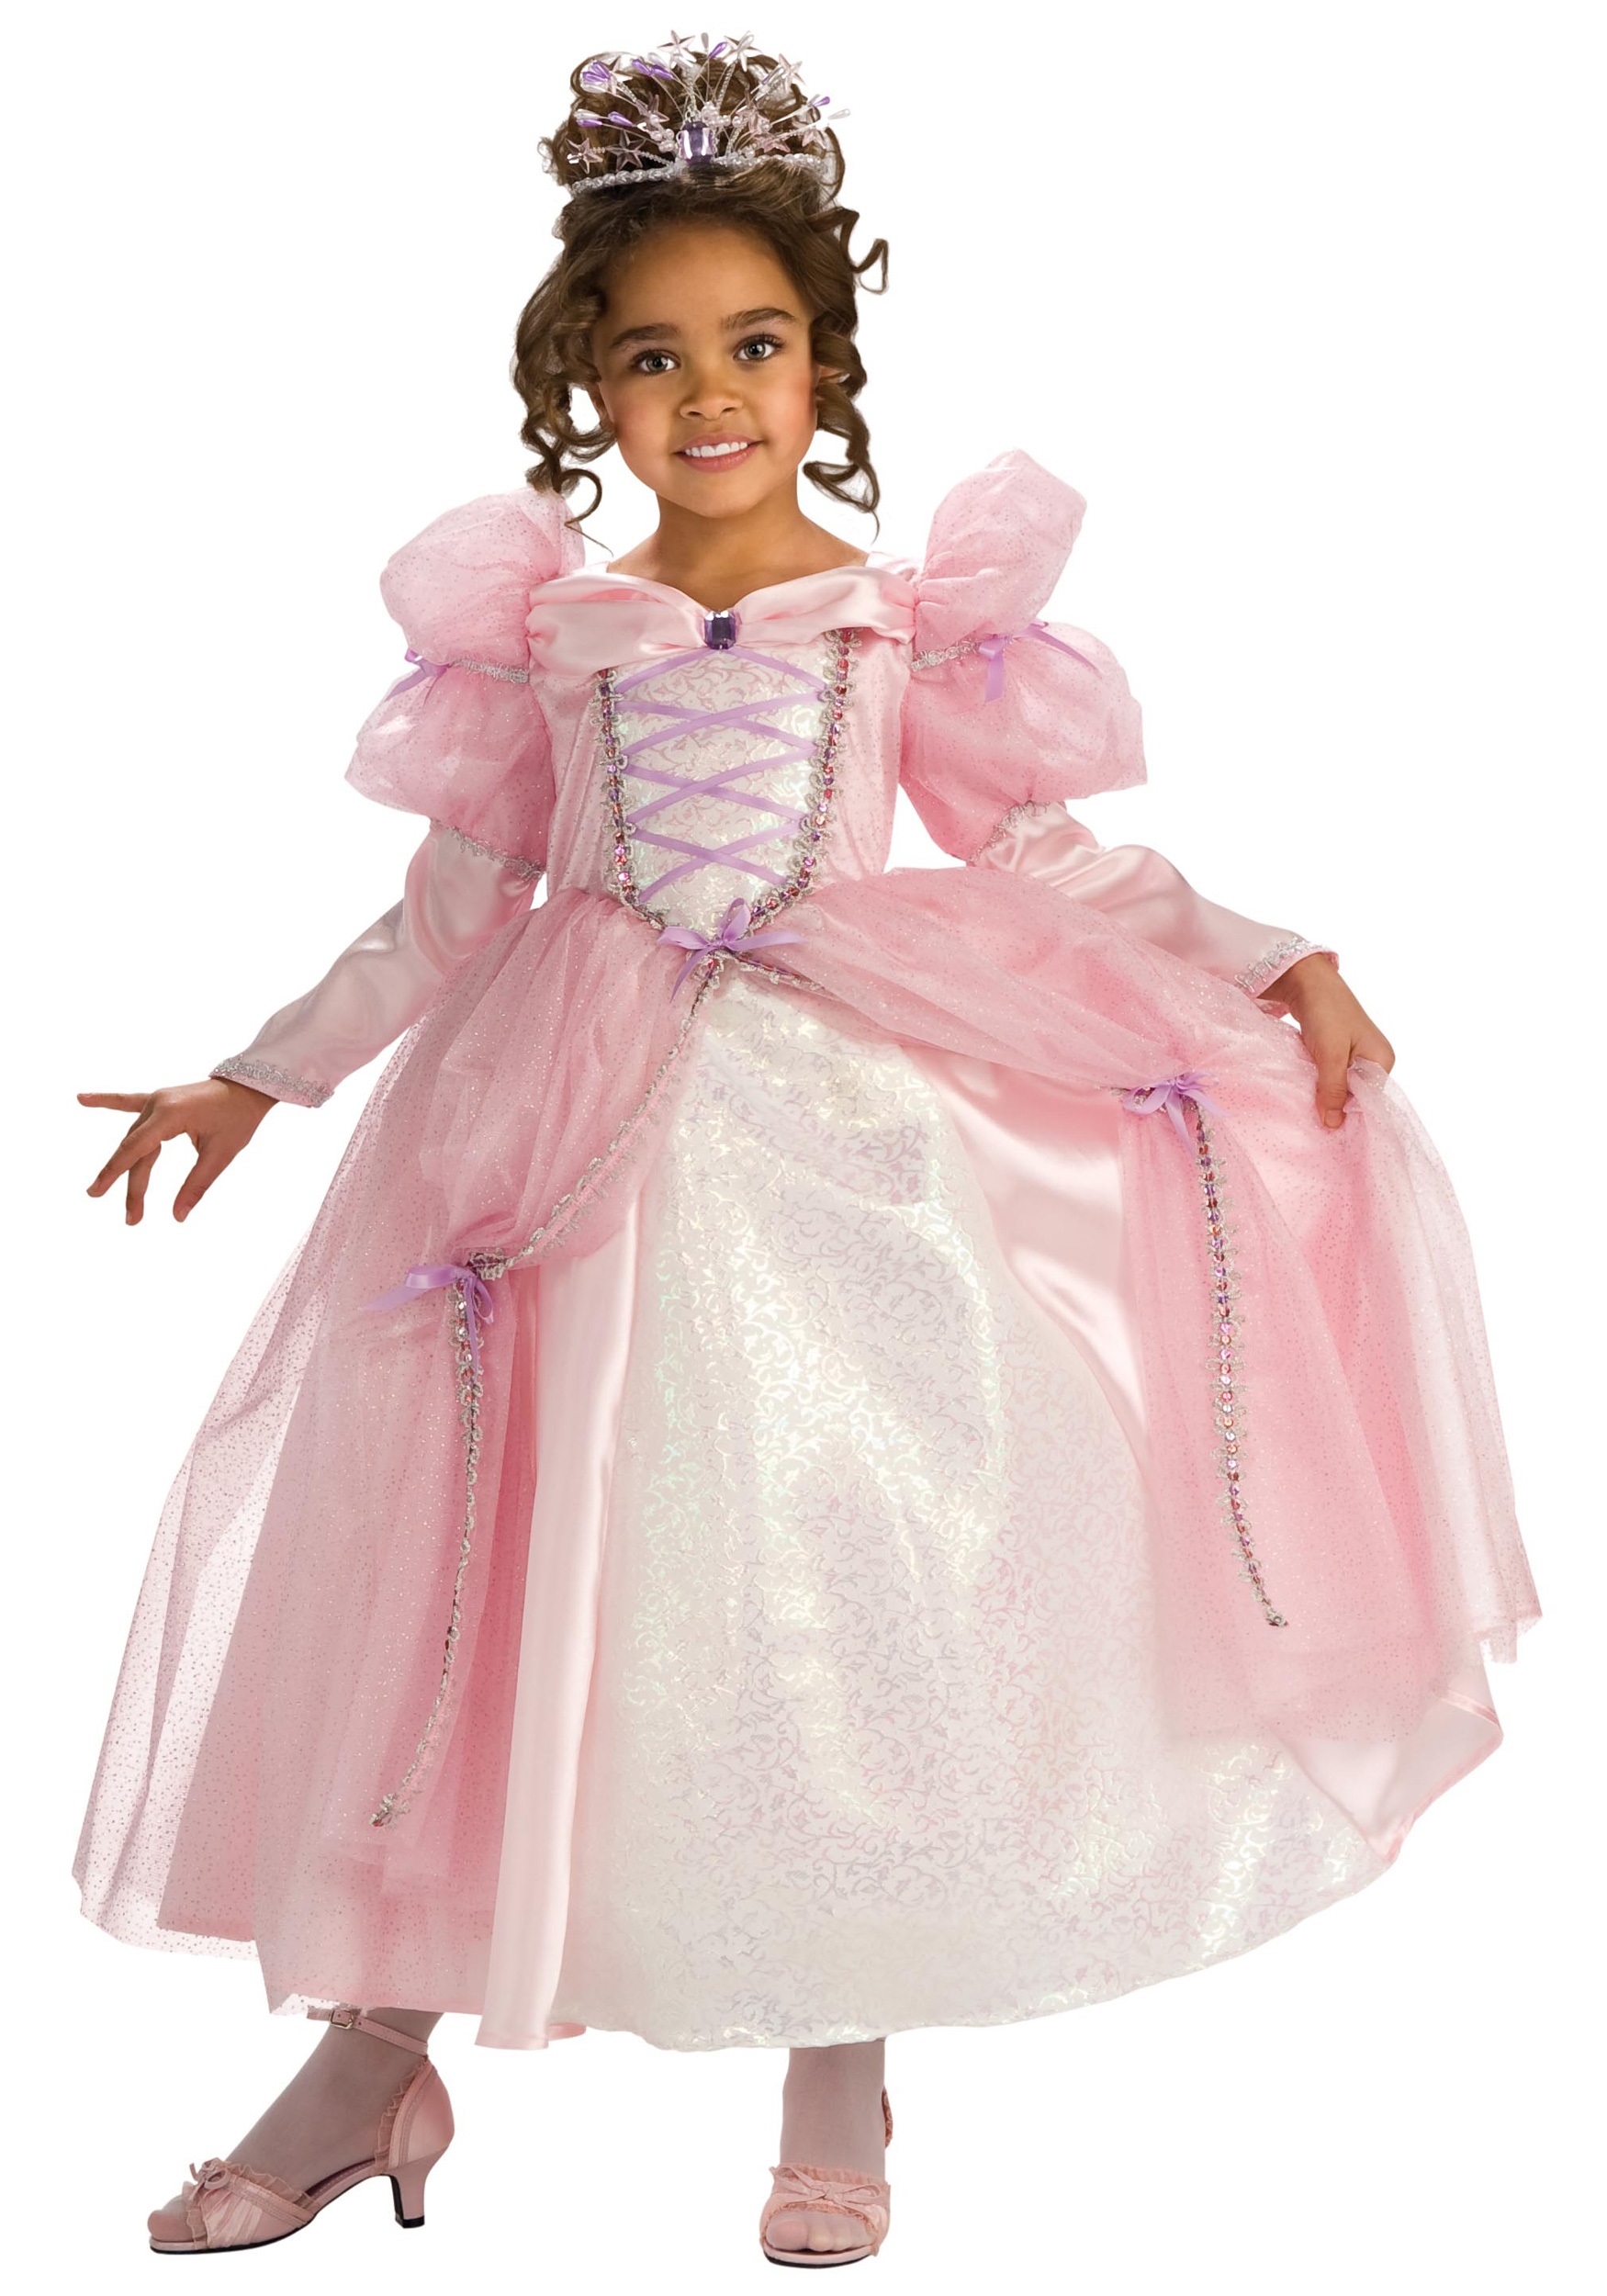 Платье принцессы для девочки 6 лет